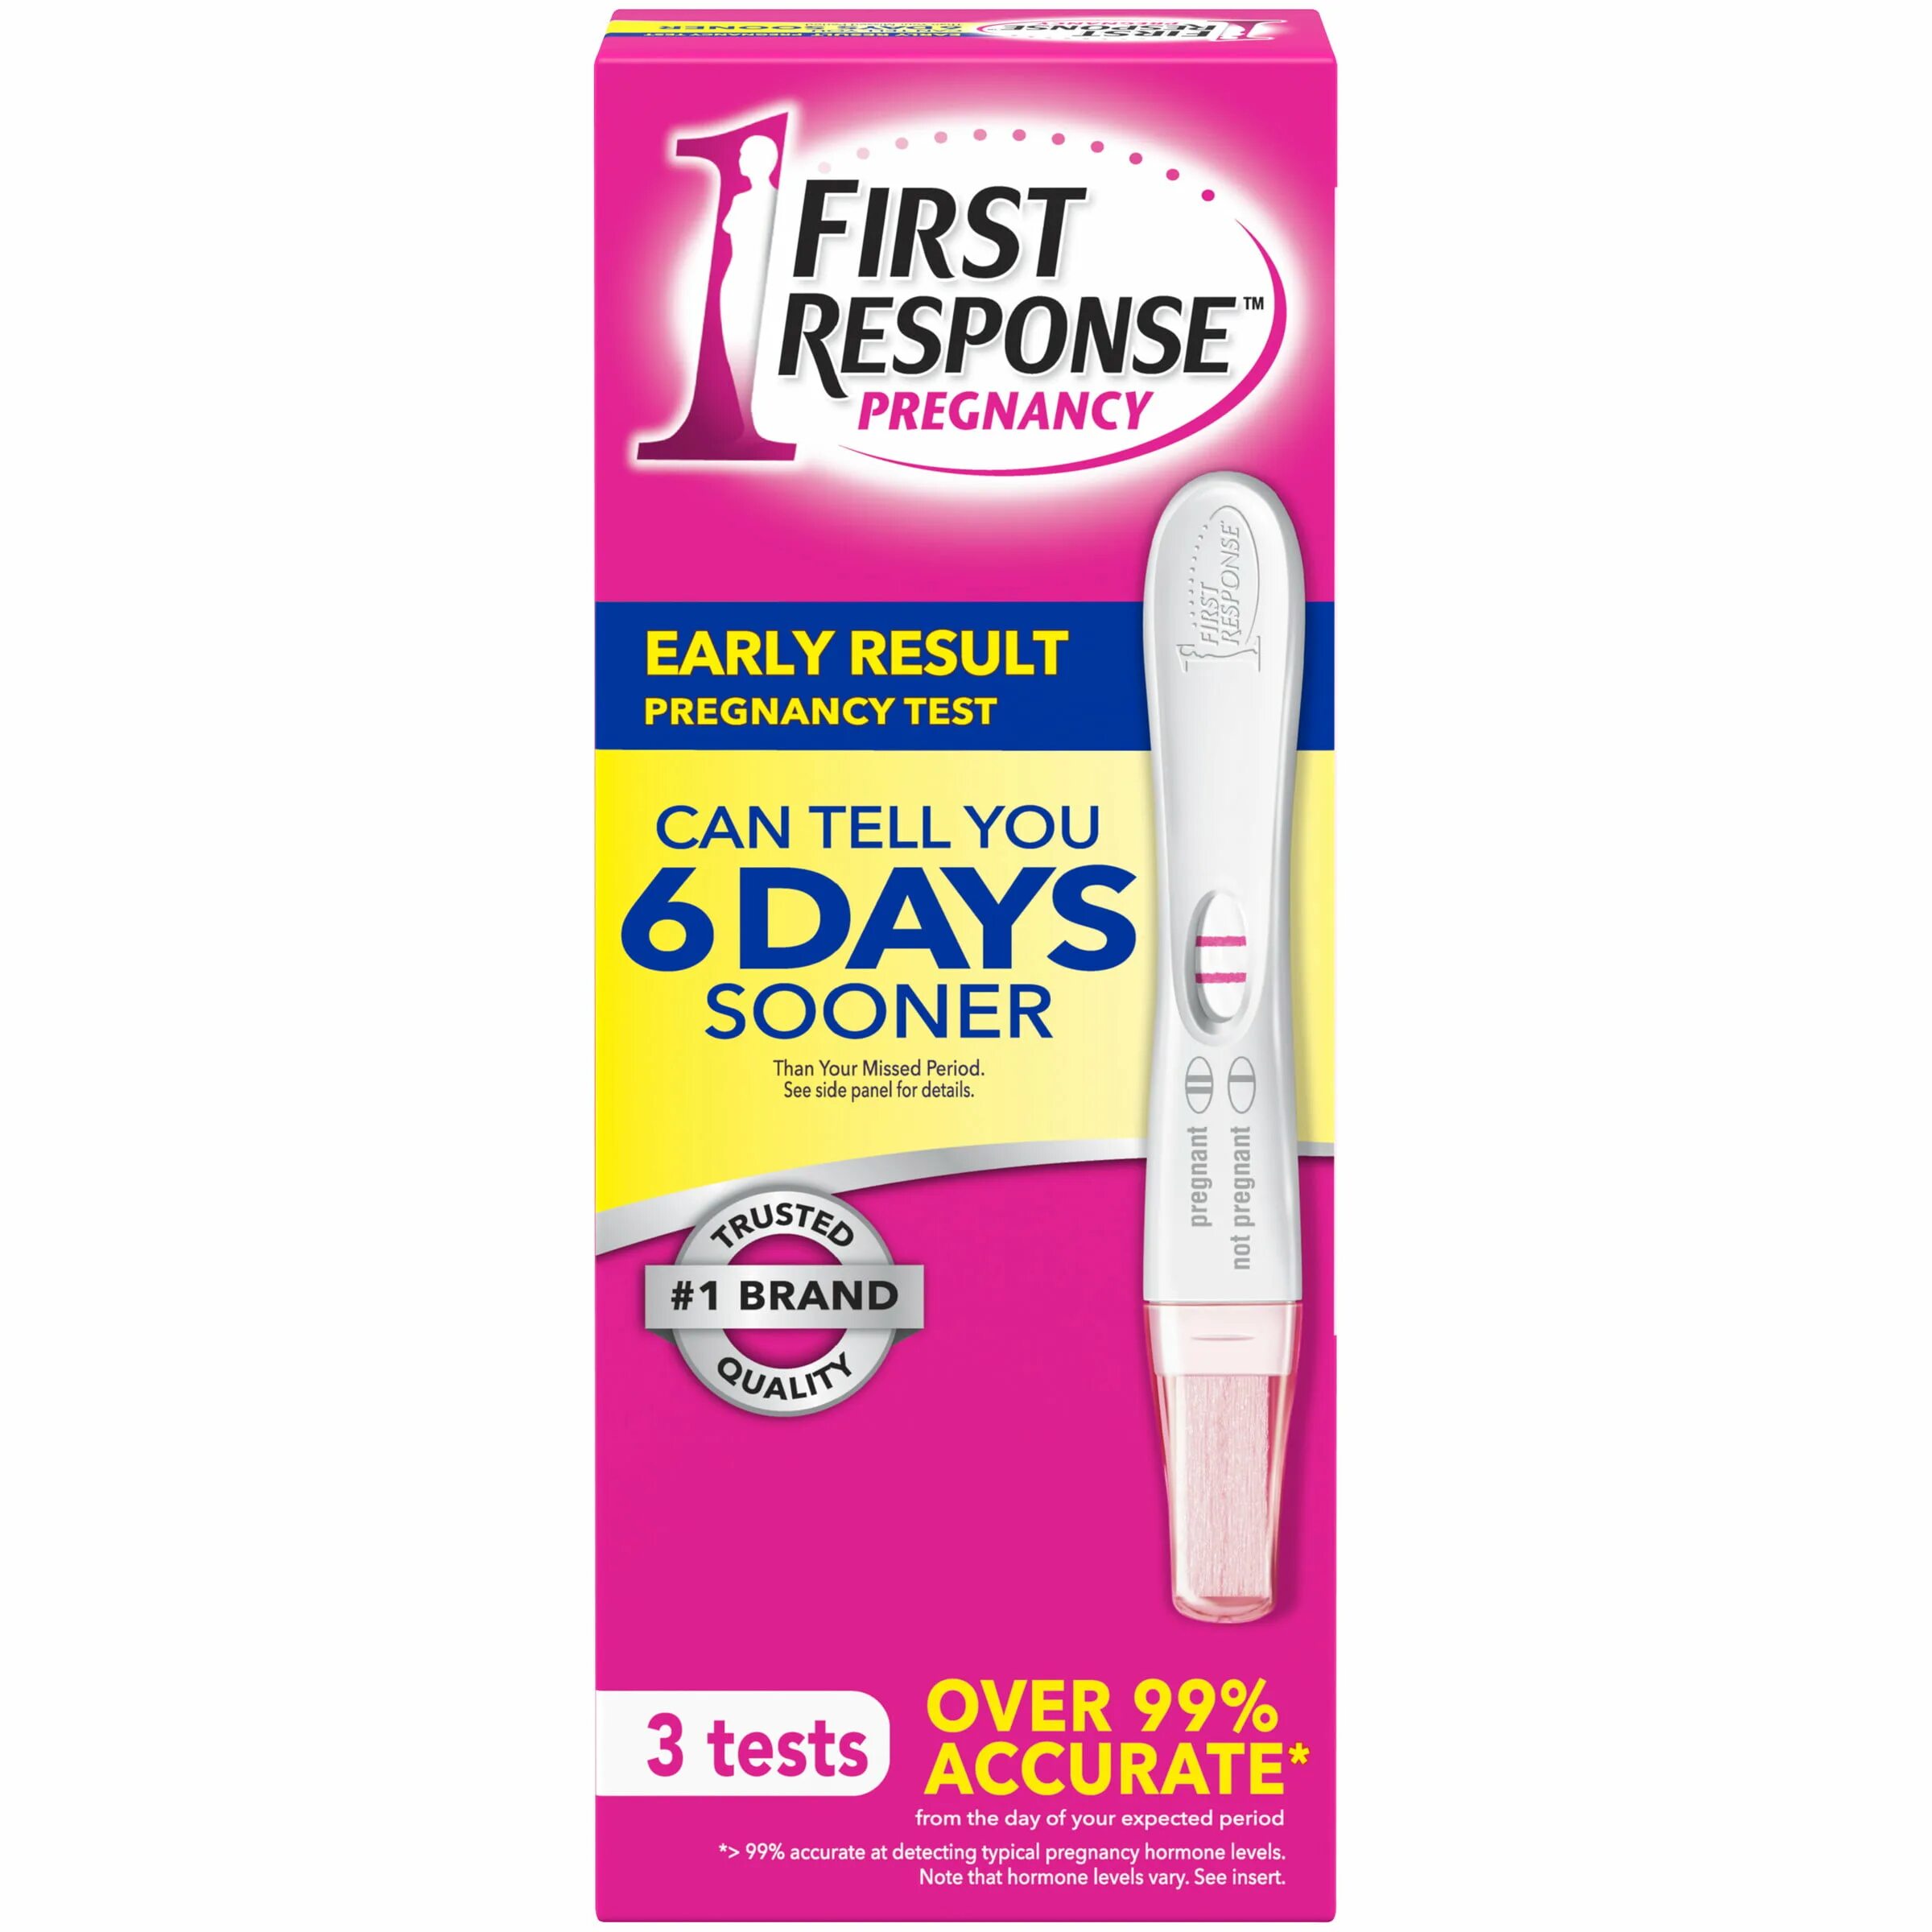 Your result тест. Тест на беременность Ферст Респонс. First response тест на беременность. First response тест. First response early Result тест на беременность.